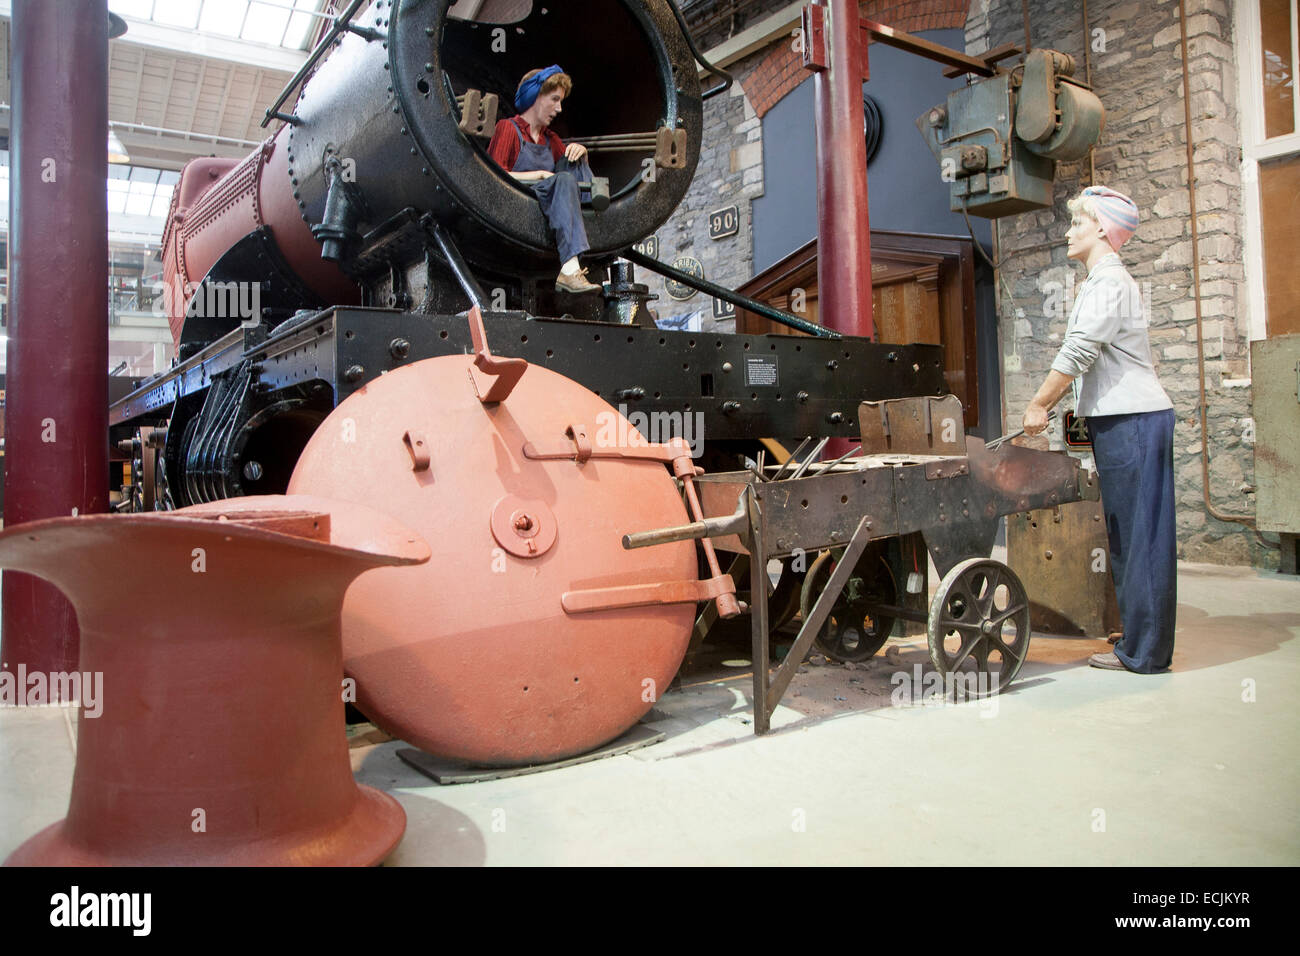 GWR il museo dei treni a vapore Swindon, Inghilterra, Regno Unito manichino di lavoratrice in officina Foto Stock